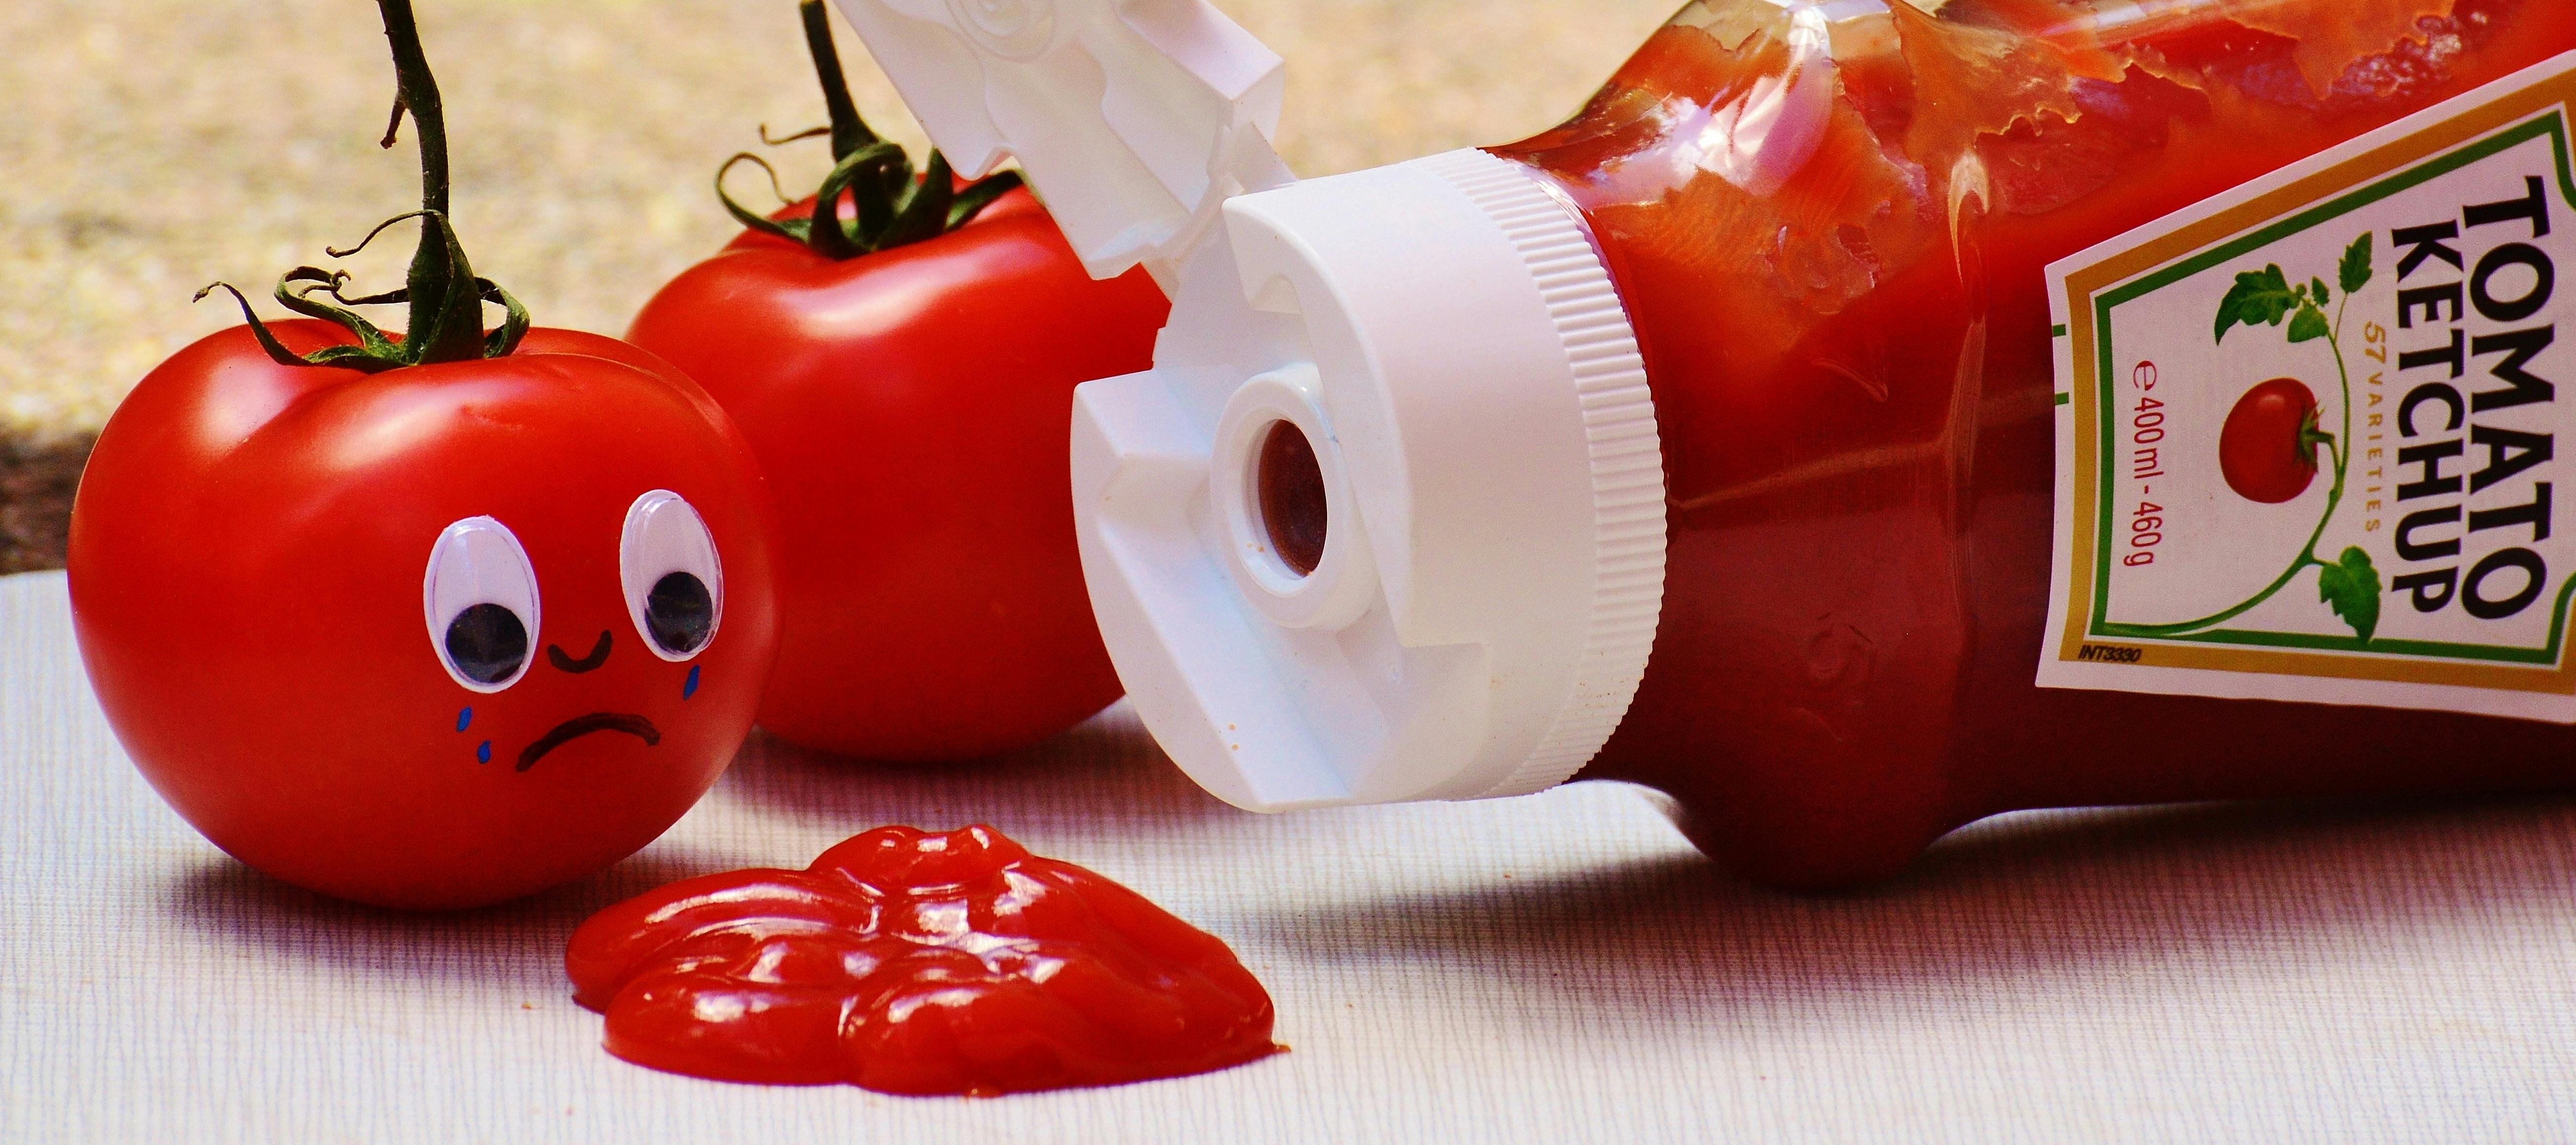 Rezultat iskanja slik za ketchup